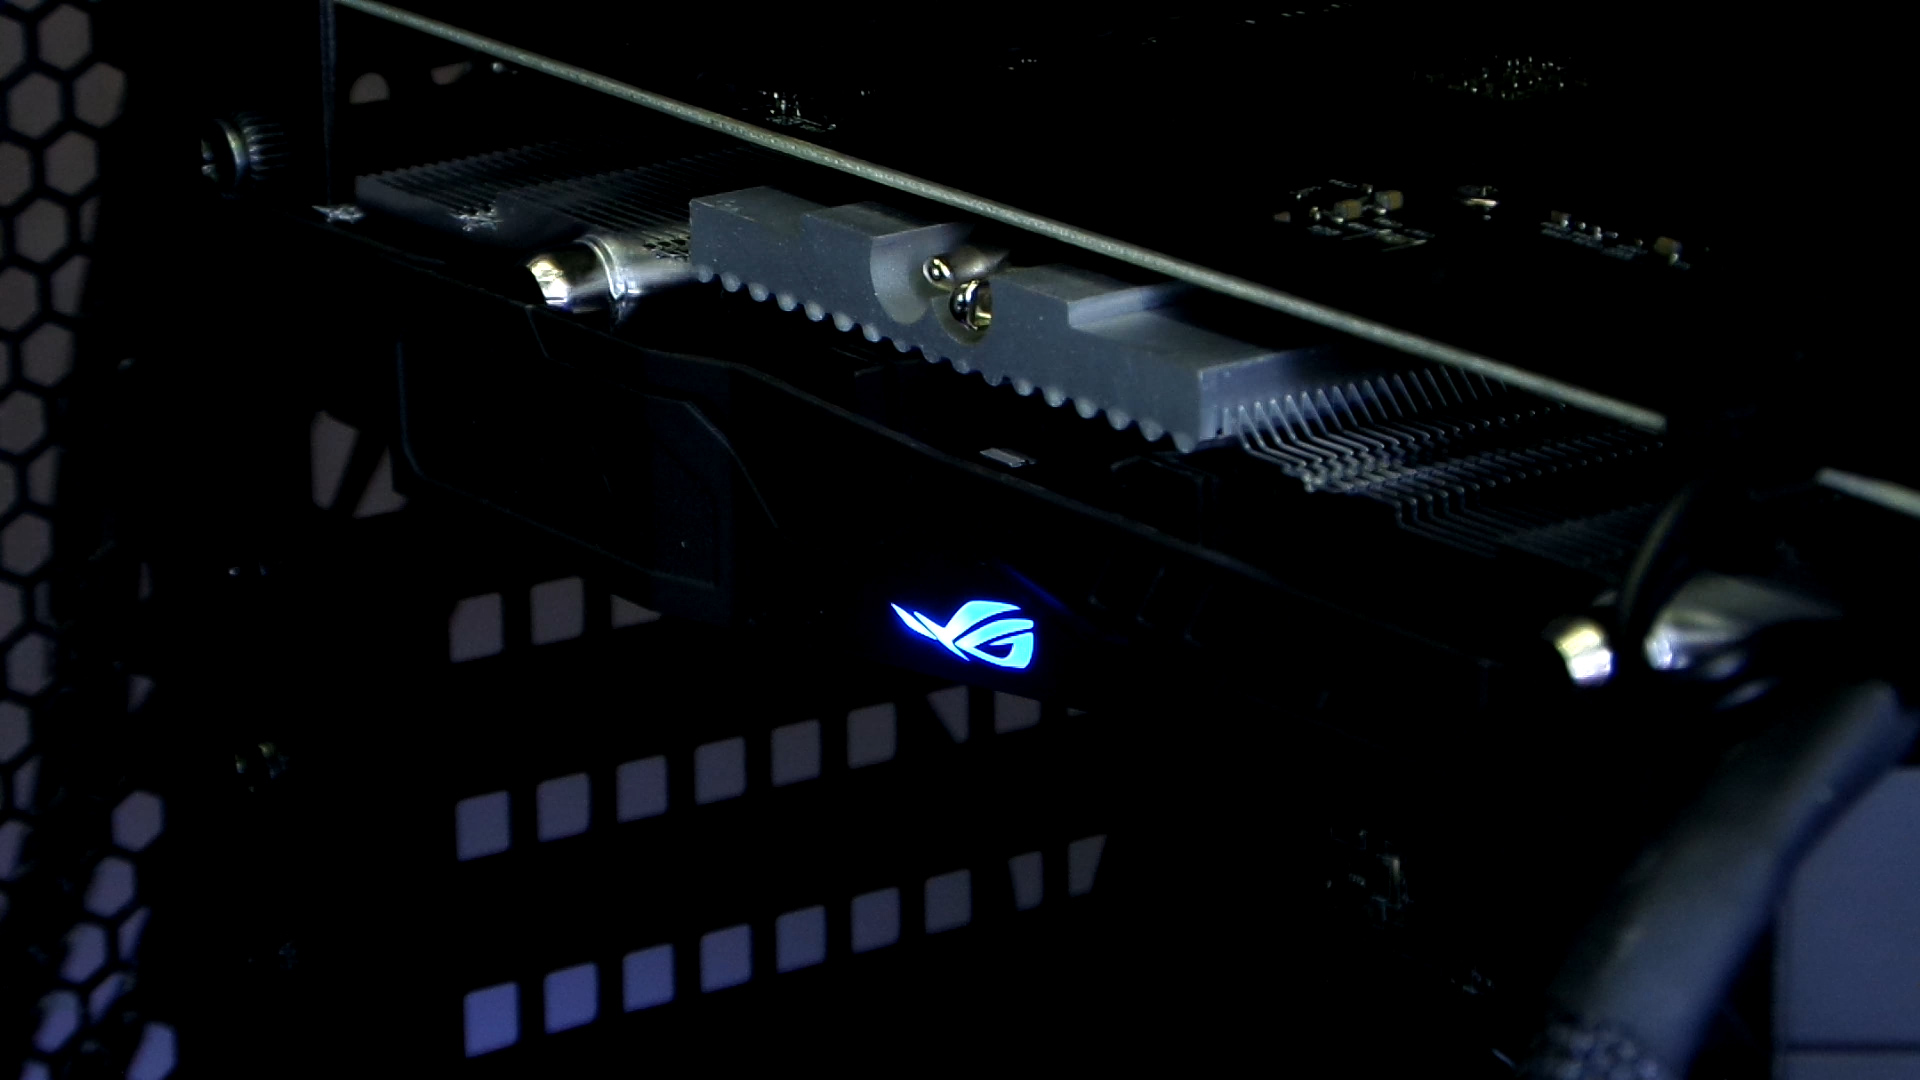 Asus GTX1050Ti Strix incelemesi 'Daha verimli, daha performanslı'